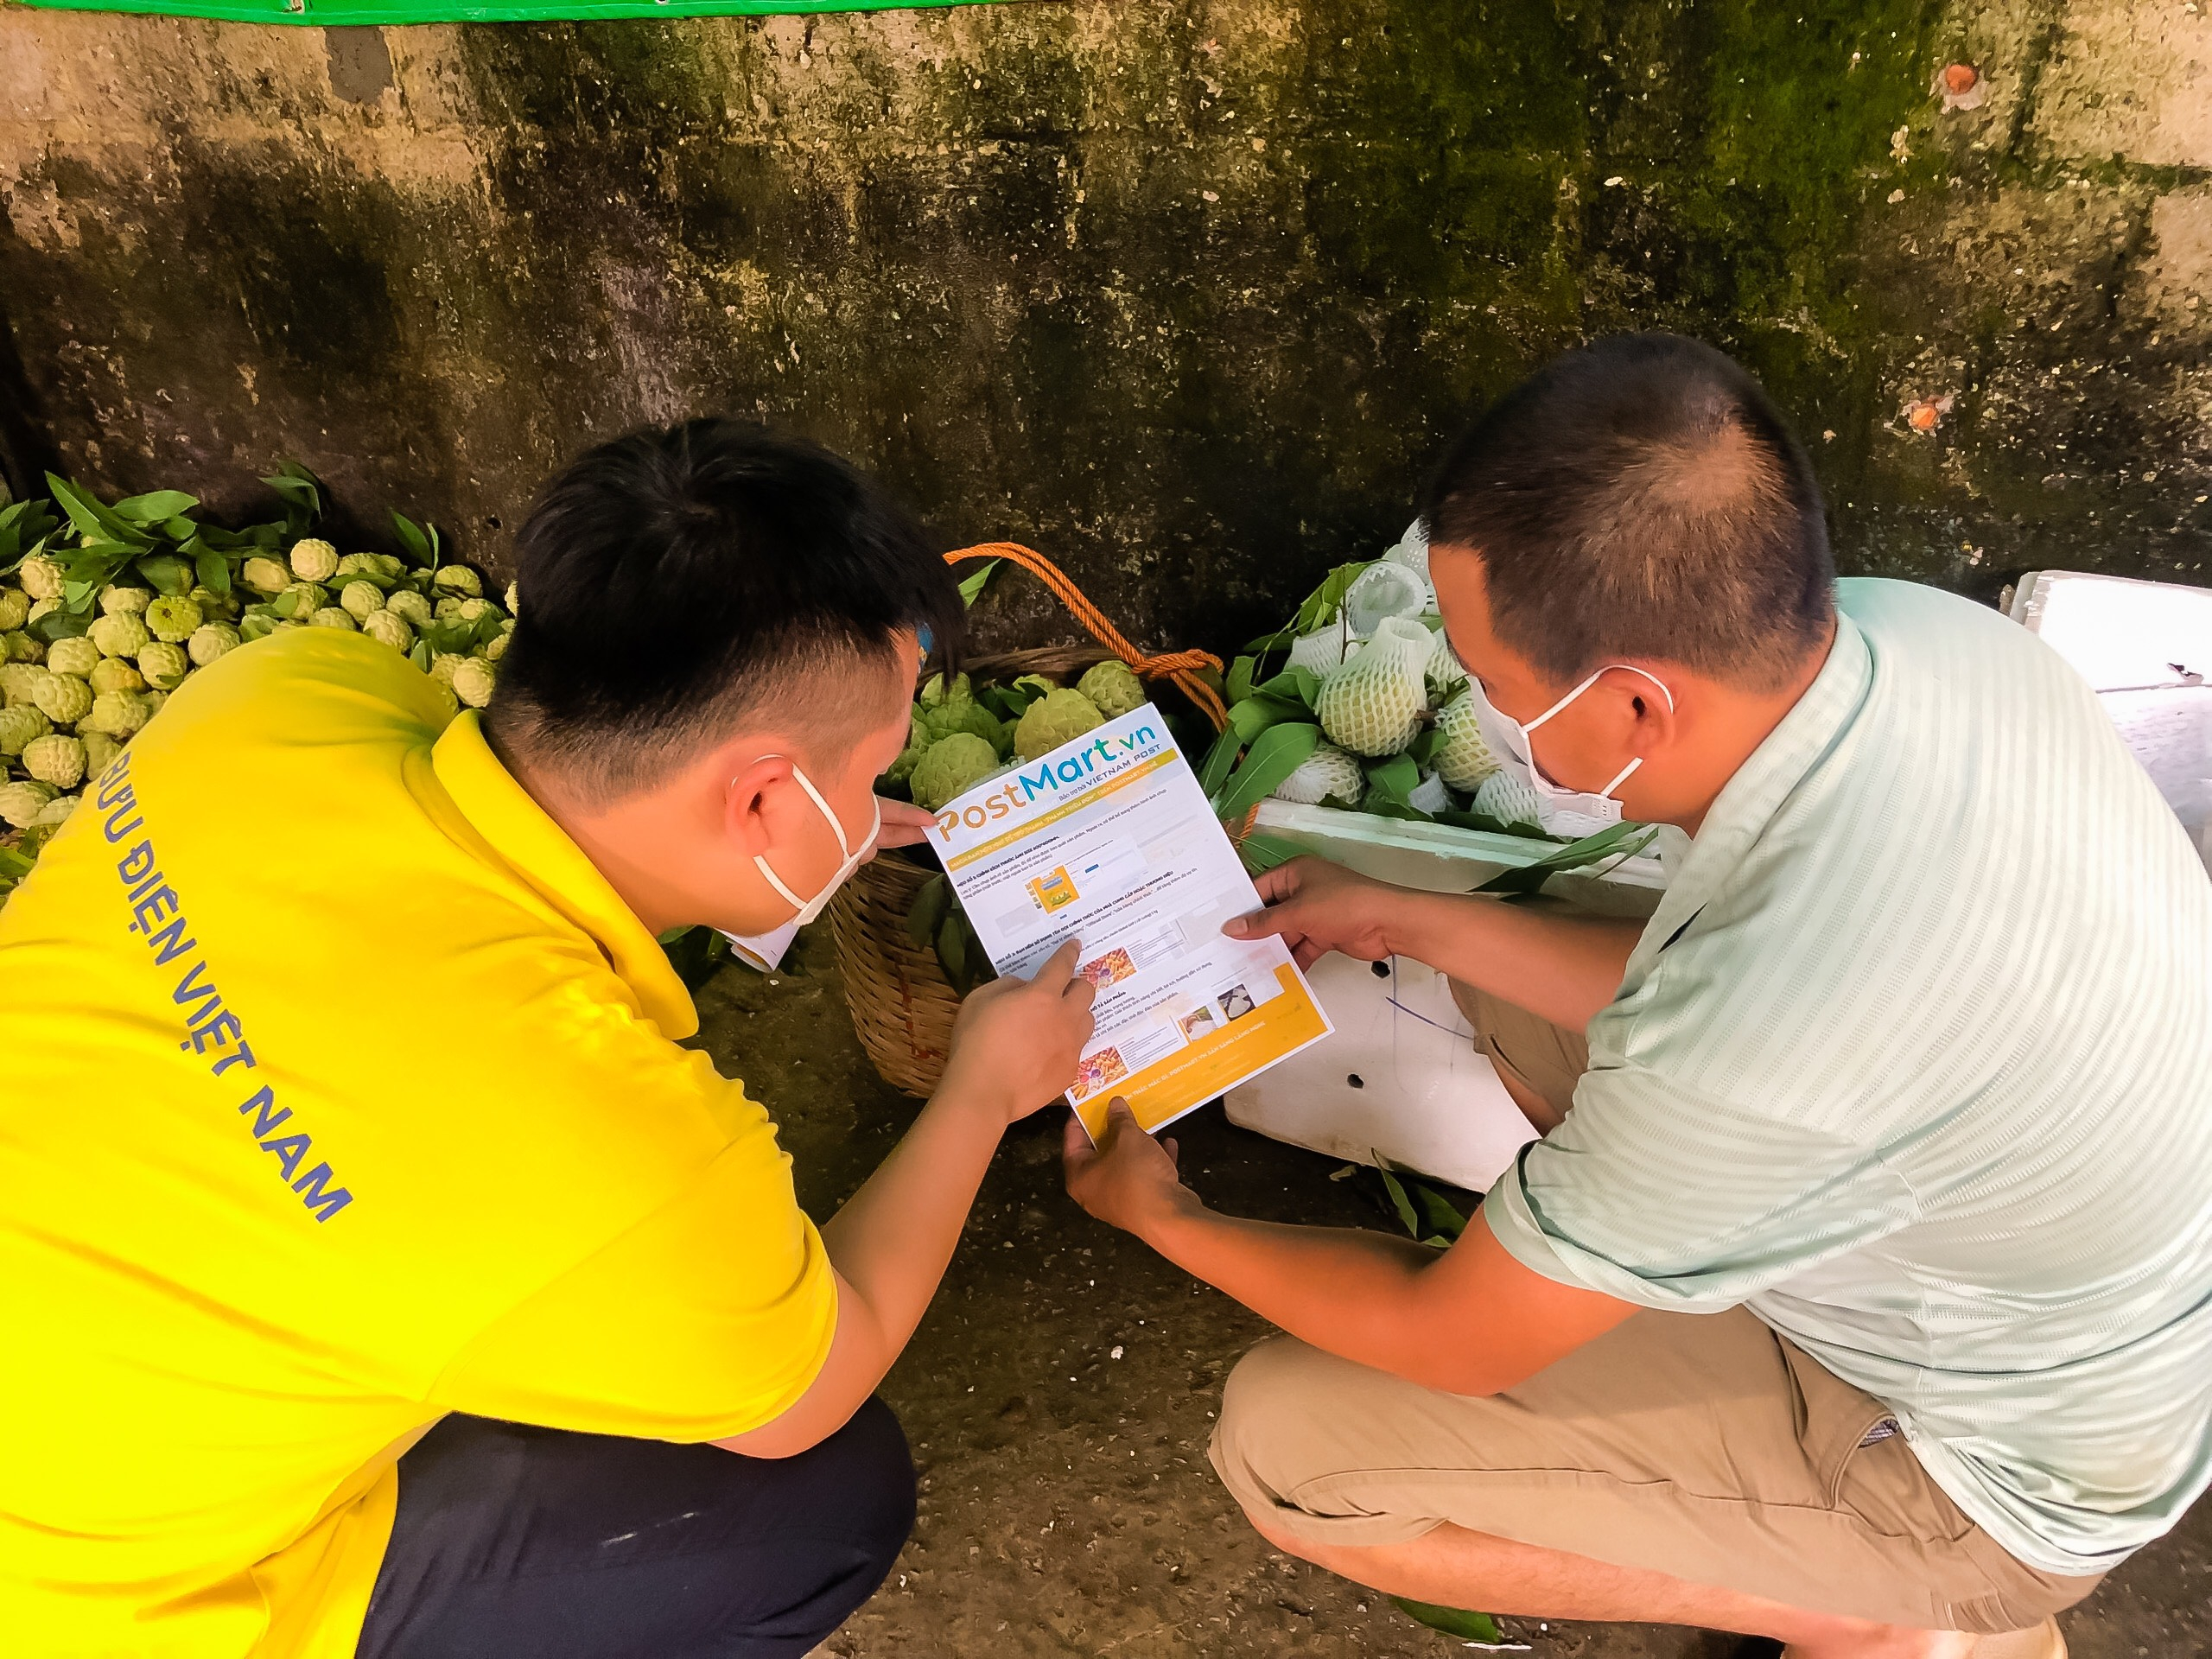 Nông dân Lạng Sơn được nhân viên Bưu diện Việt Nam hướng dẫn cách sử dụng Postmart.vn.